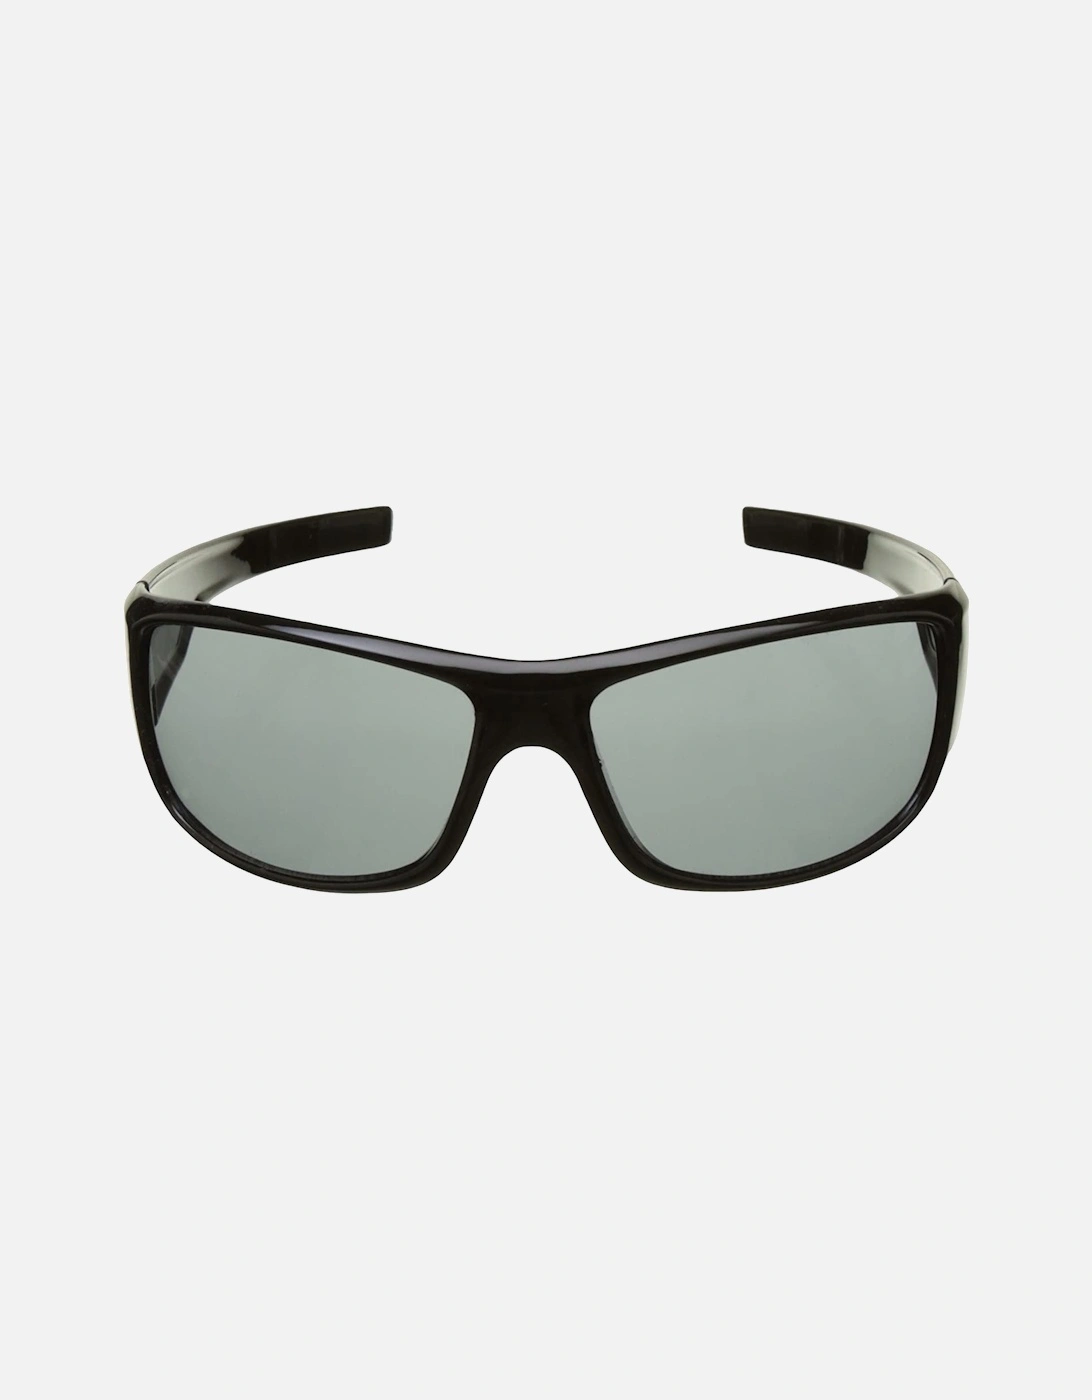 Adults Unisex Anti Virus Tinted Sunglasses